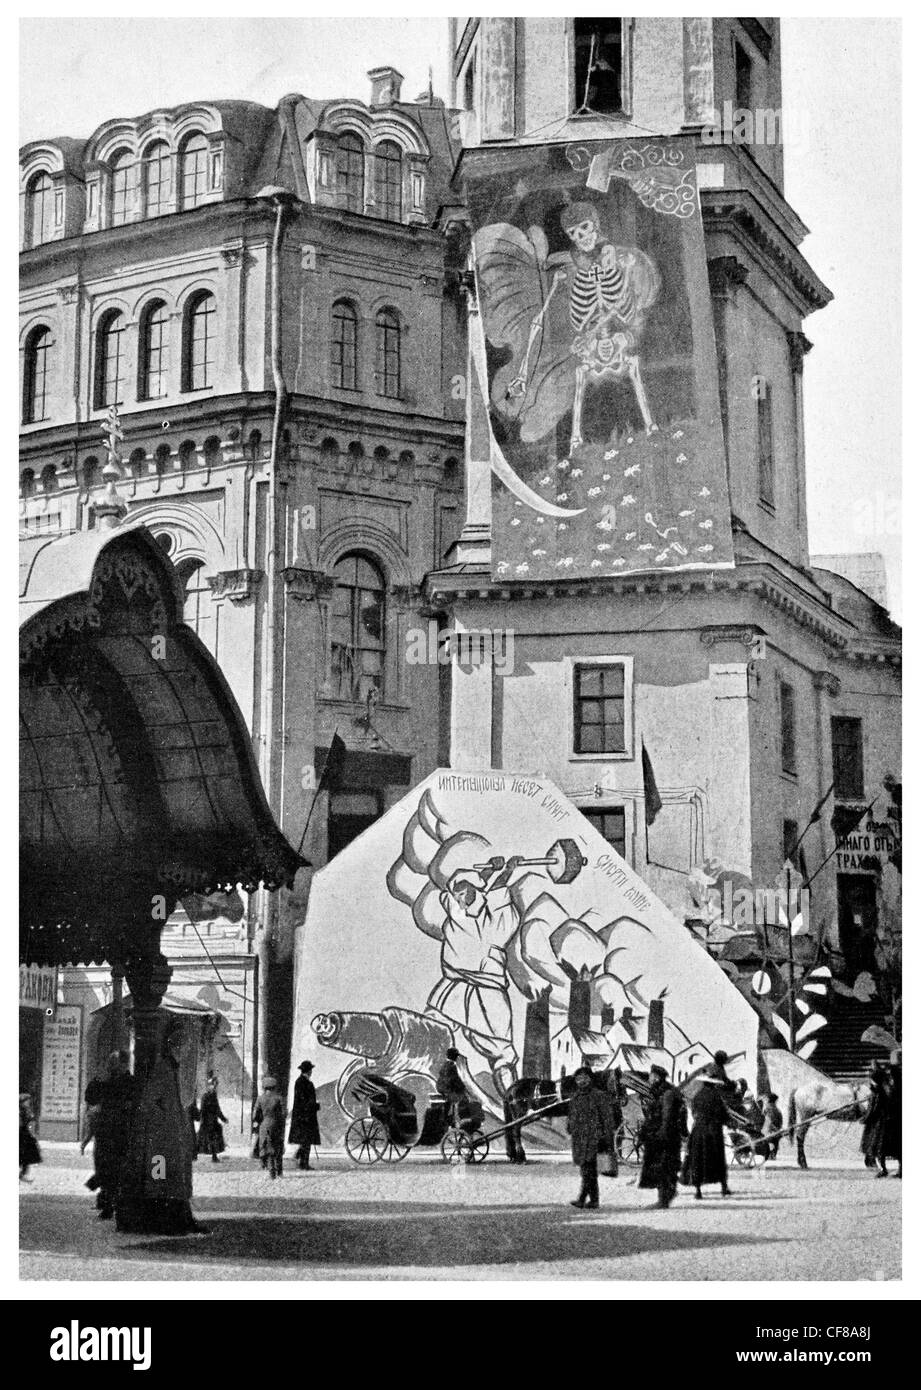 1926 La propagande bolchevique sur les murs de la Douma municipale, révolution russe Banque D'Images